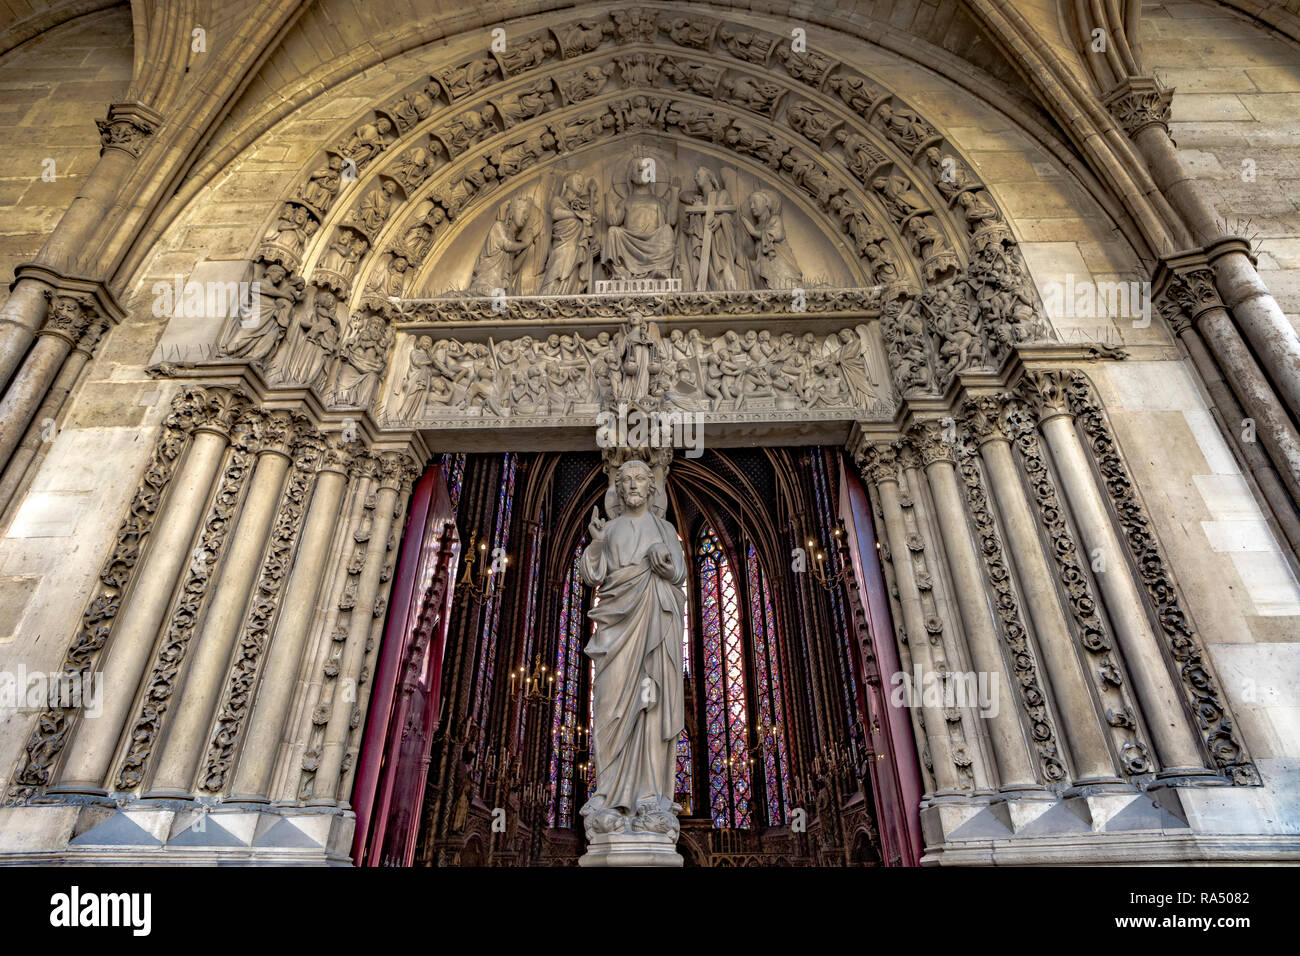 Sainte-Chapelle ist eine königliche Kapelle im gotischen Stil, in den mittelalterlichen Palais de la Cité, Paris, ein Juwel der Gotik Rayonnant Stockfoto